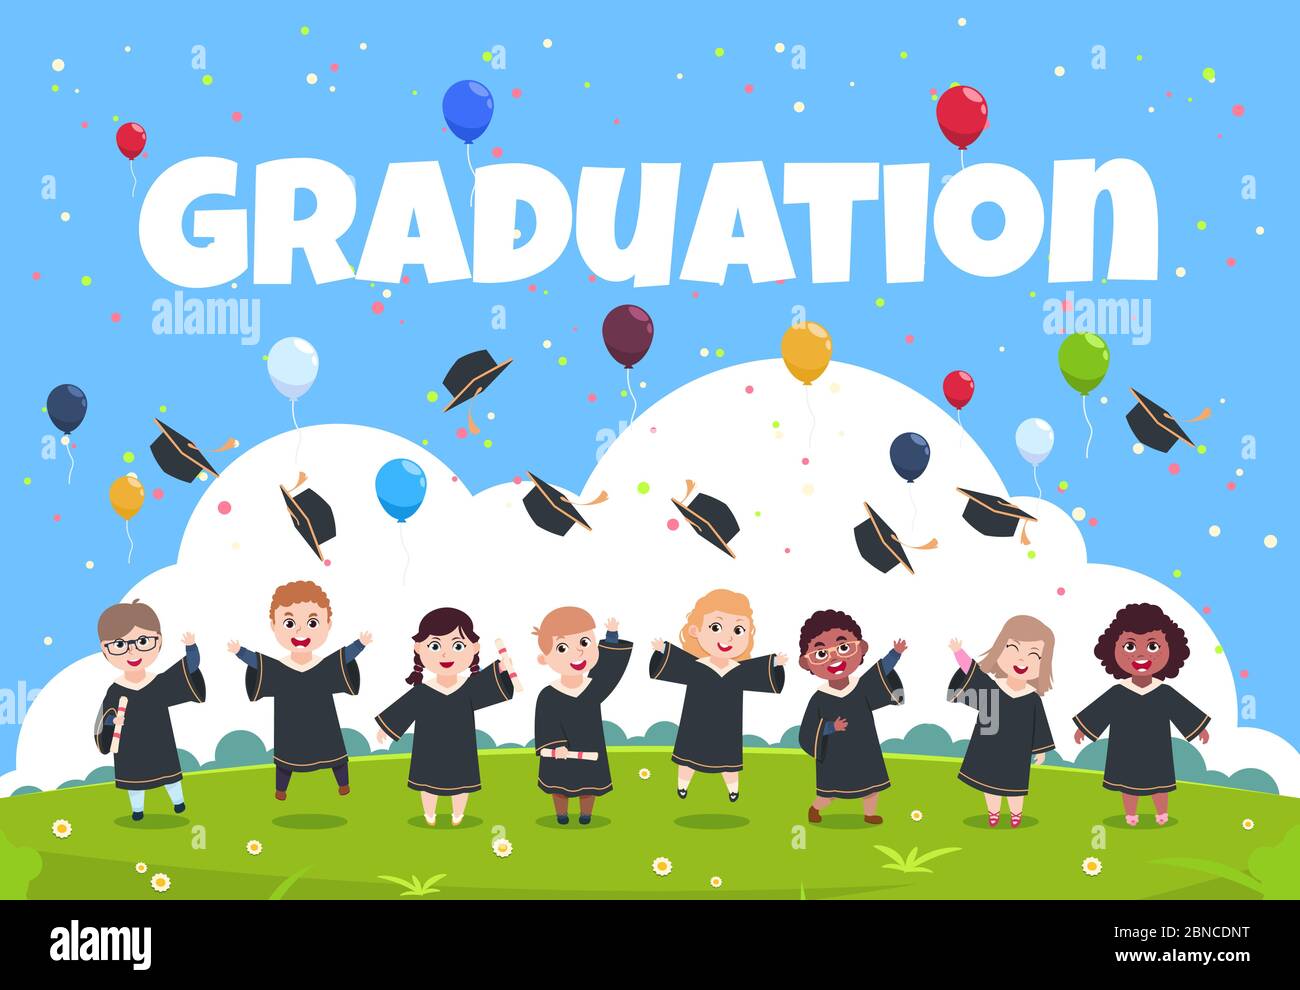 Graduate Kinder Hintergrund. Kinder tragen in akademischen Kleidung feiern Graduierung Tag Vektor-Illustration. Ausbildung und Graduierung, akademische Zeremonie Stock Vektor